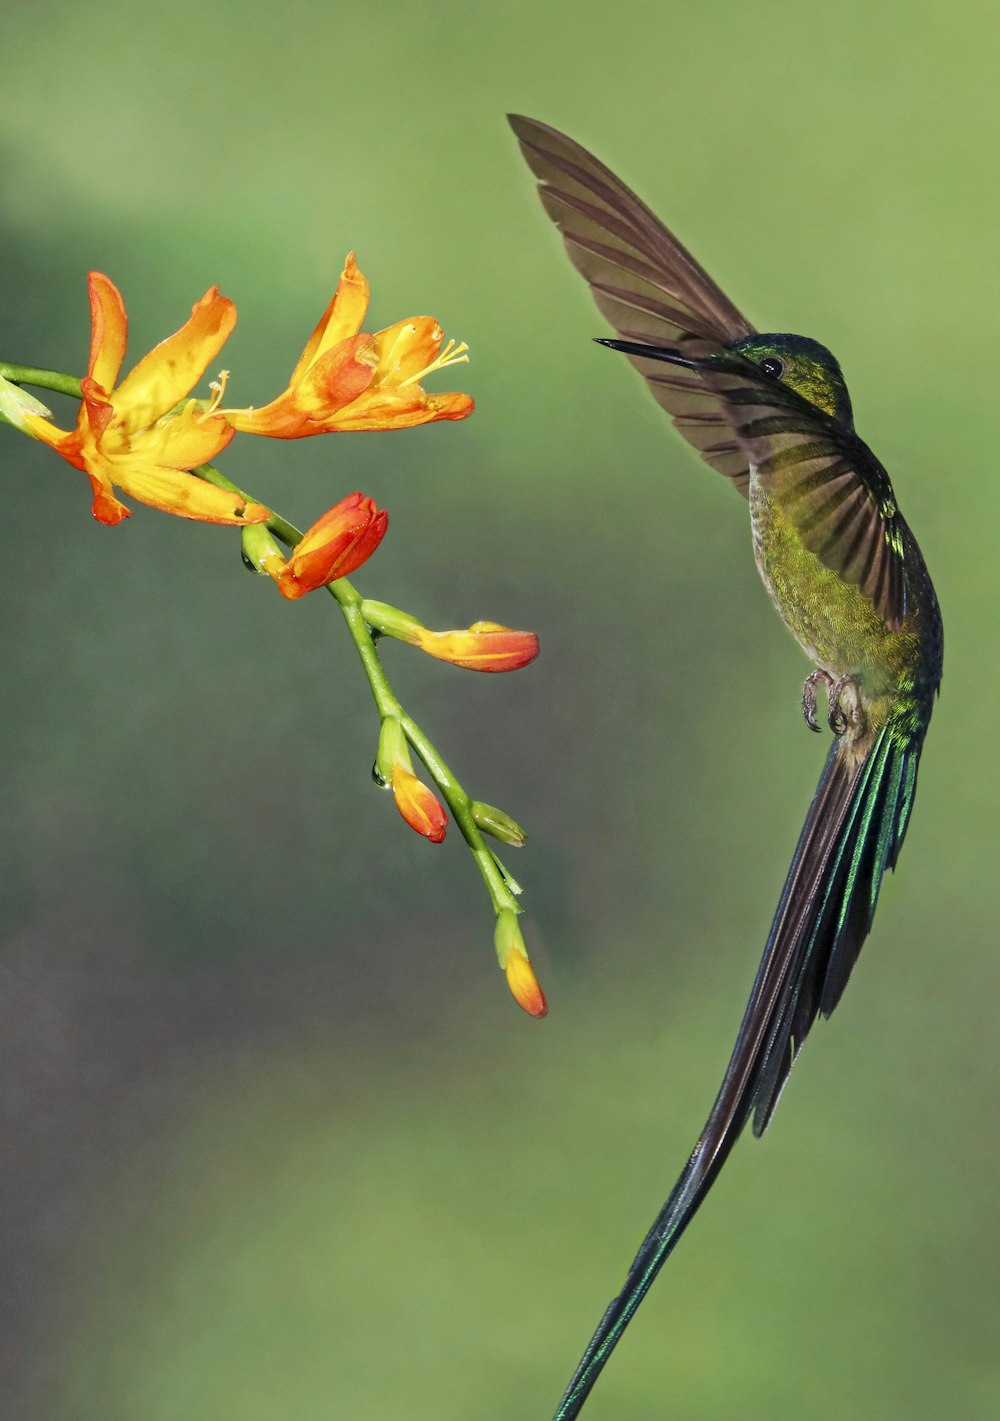 fotografia macro de pássaro e flor